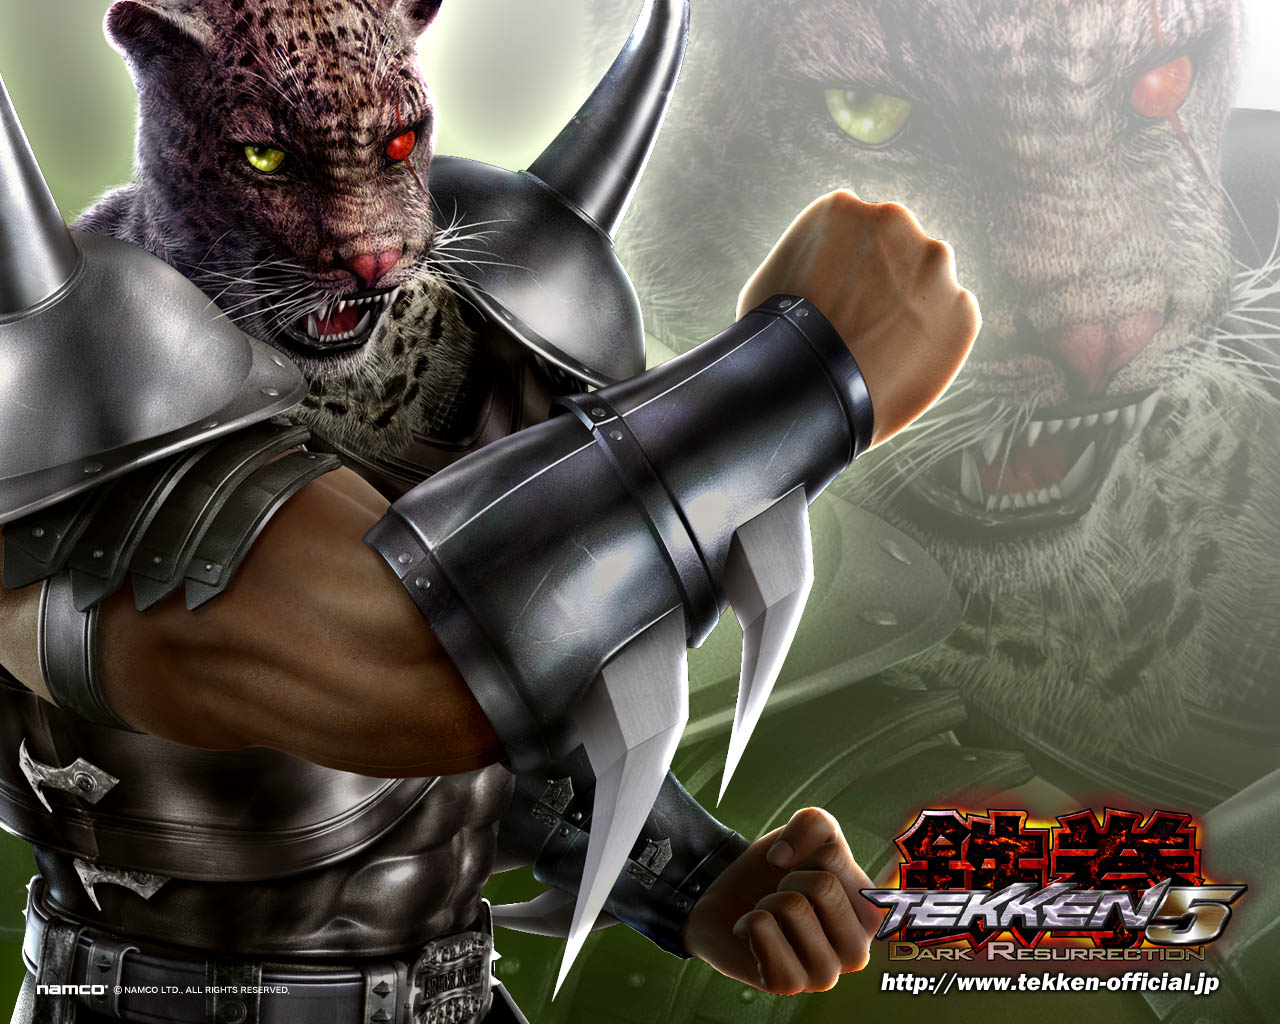 King Tekken Dark Resurrection Wallpaper Armor